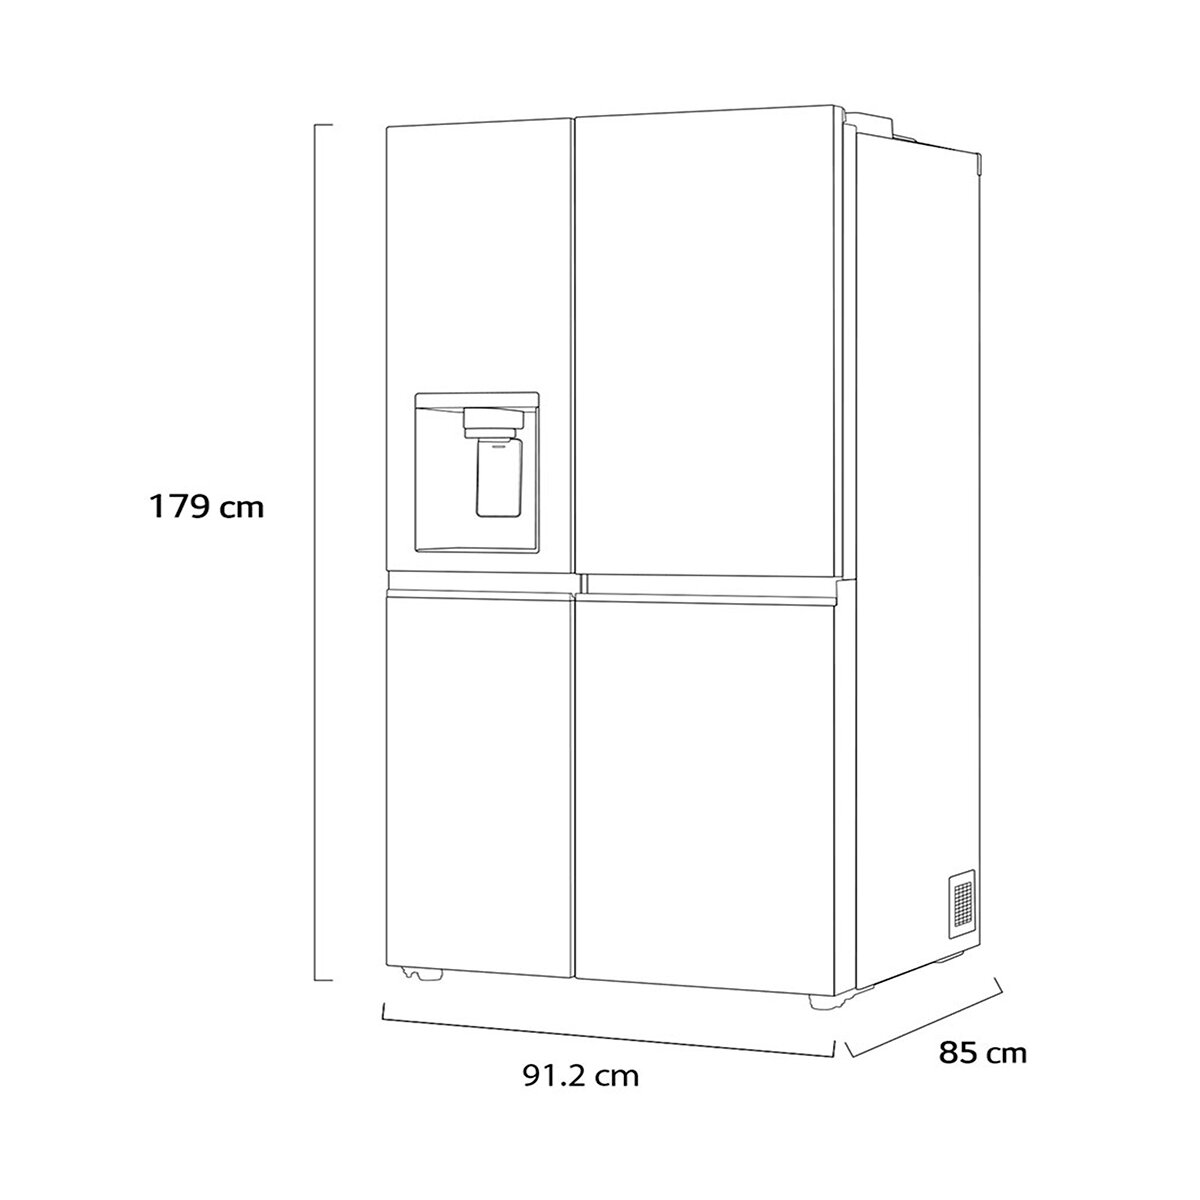 LG Refrigerador 27' Duplex con Dispensador de agua